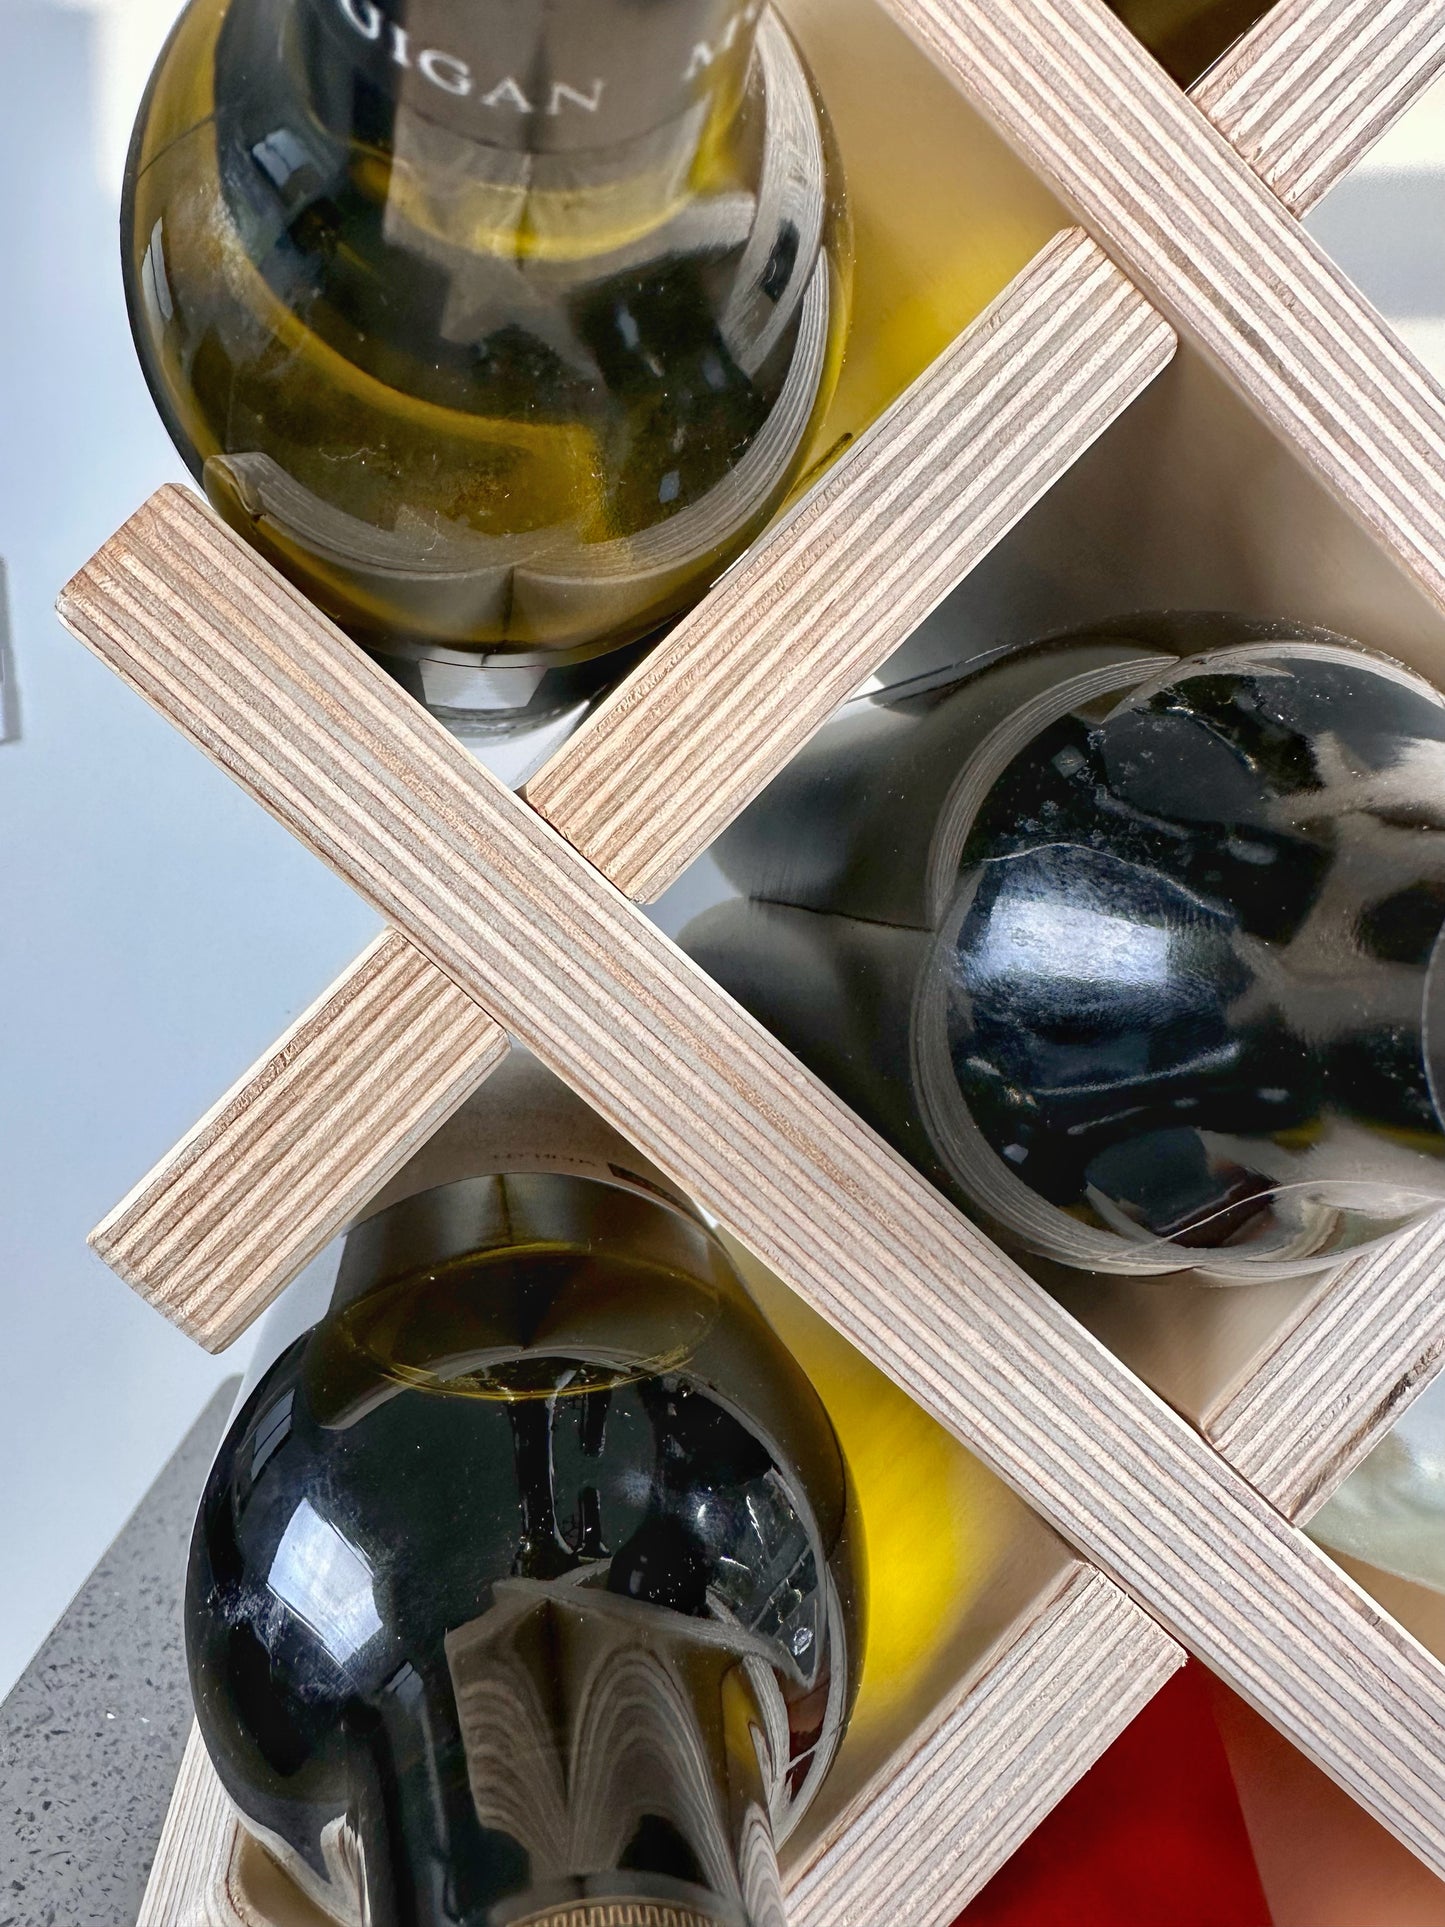 7 Bottels Wine Rack and Display